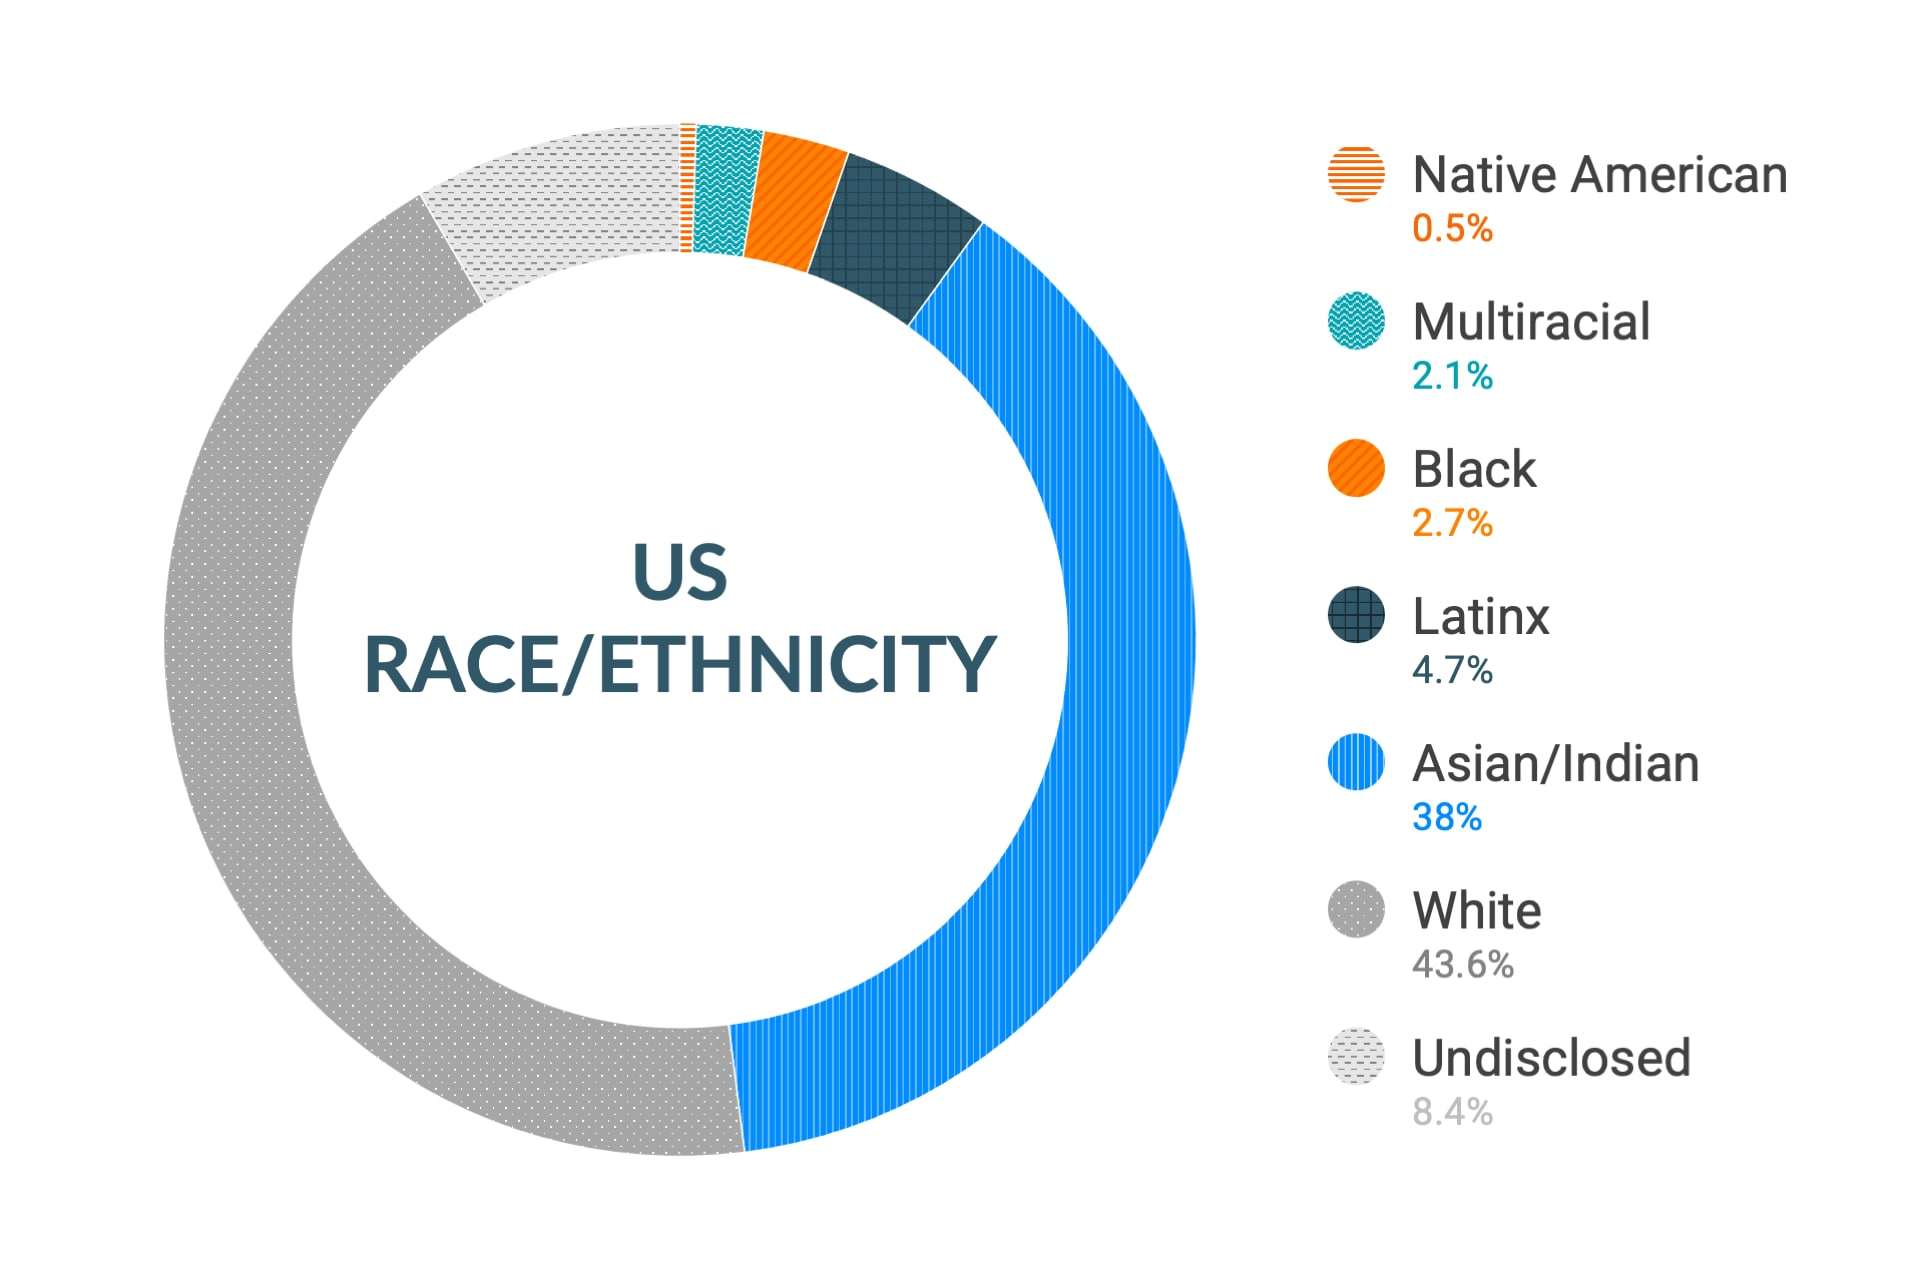 미국 지역 인종 및 민족에 대한 Cloudera의 다양성 및 포용력 데이터: 아메리카 원주민 0.5%, 다인종 2.0%, 흑인 4.0%, 라틴계 5.0%, 아시아인 및 인도인 35.9%, 백인 44.9%, 비공개 7.7%